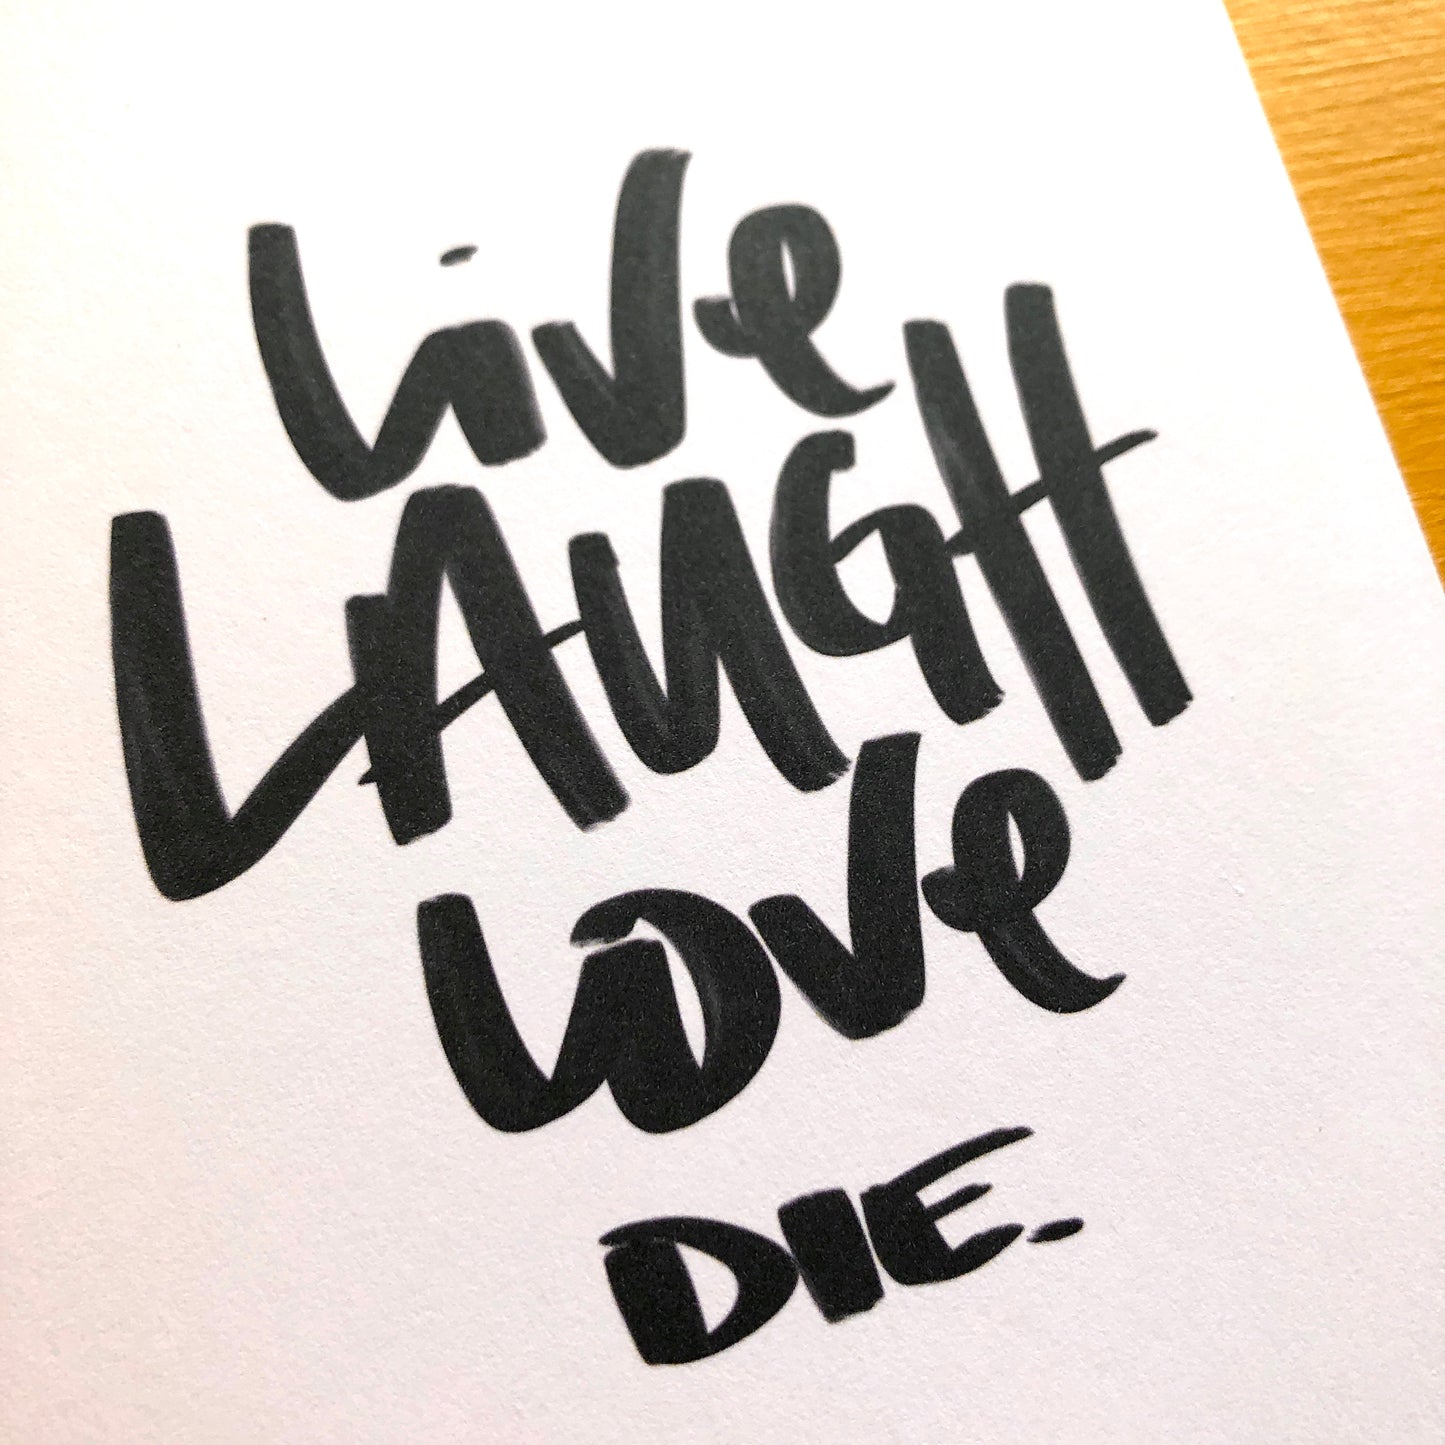 Live Laugh Love Die